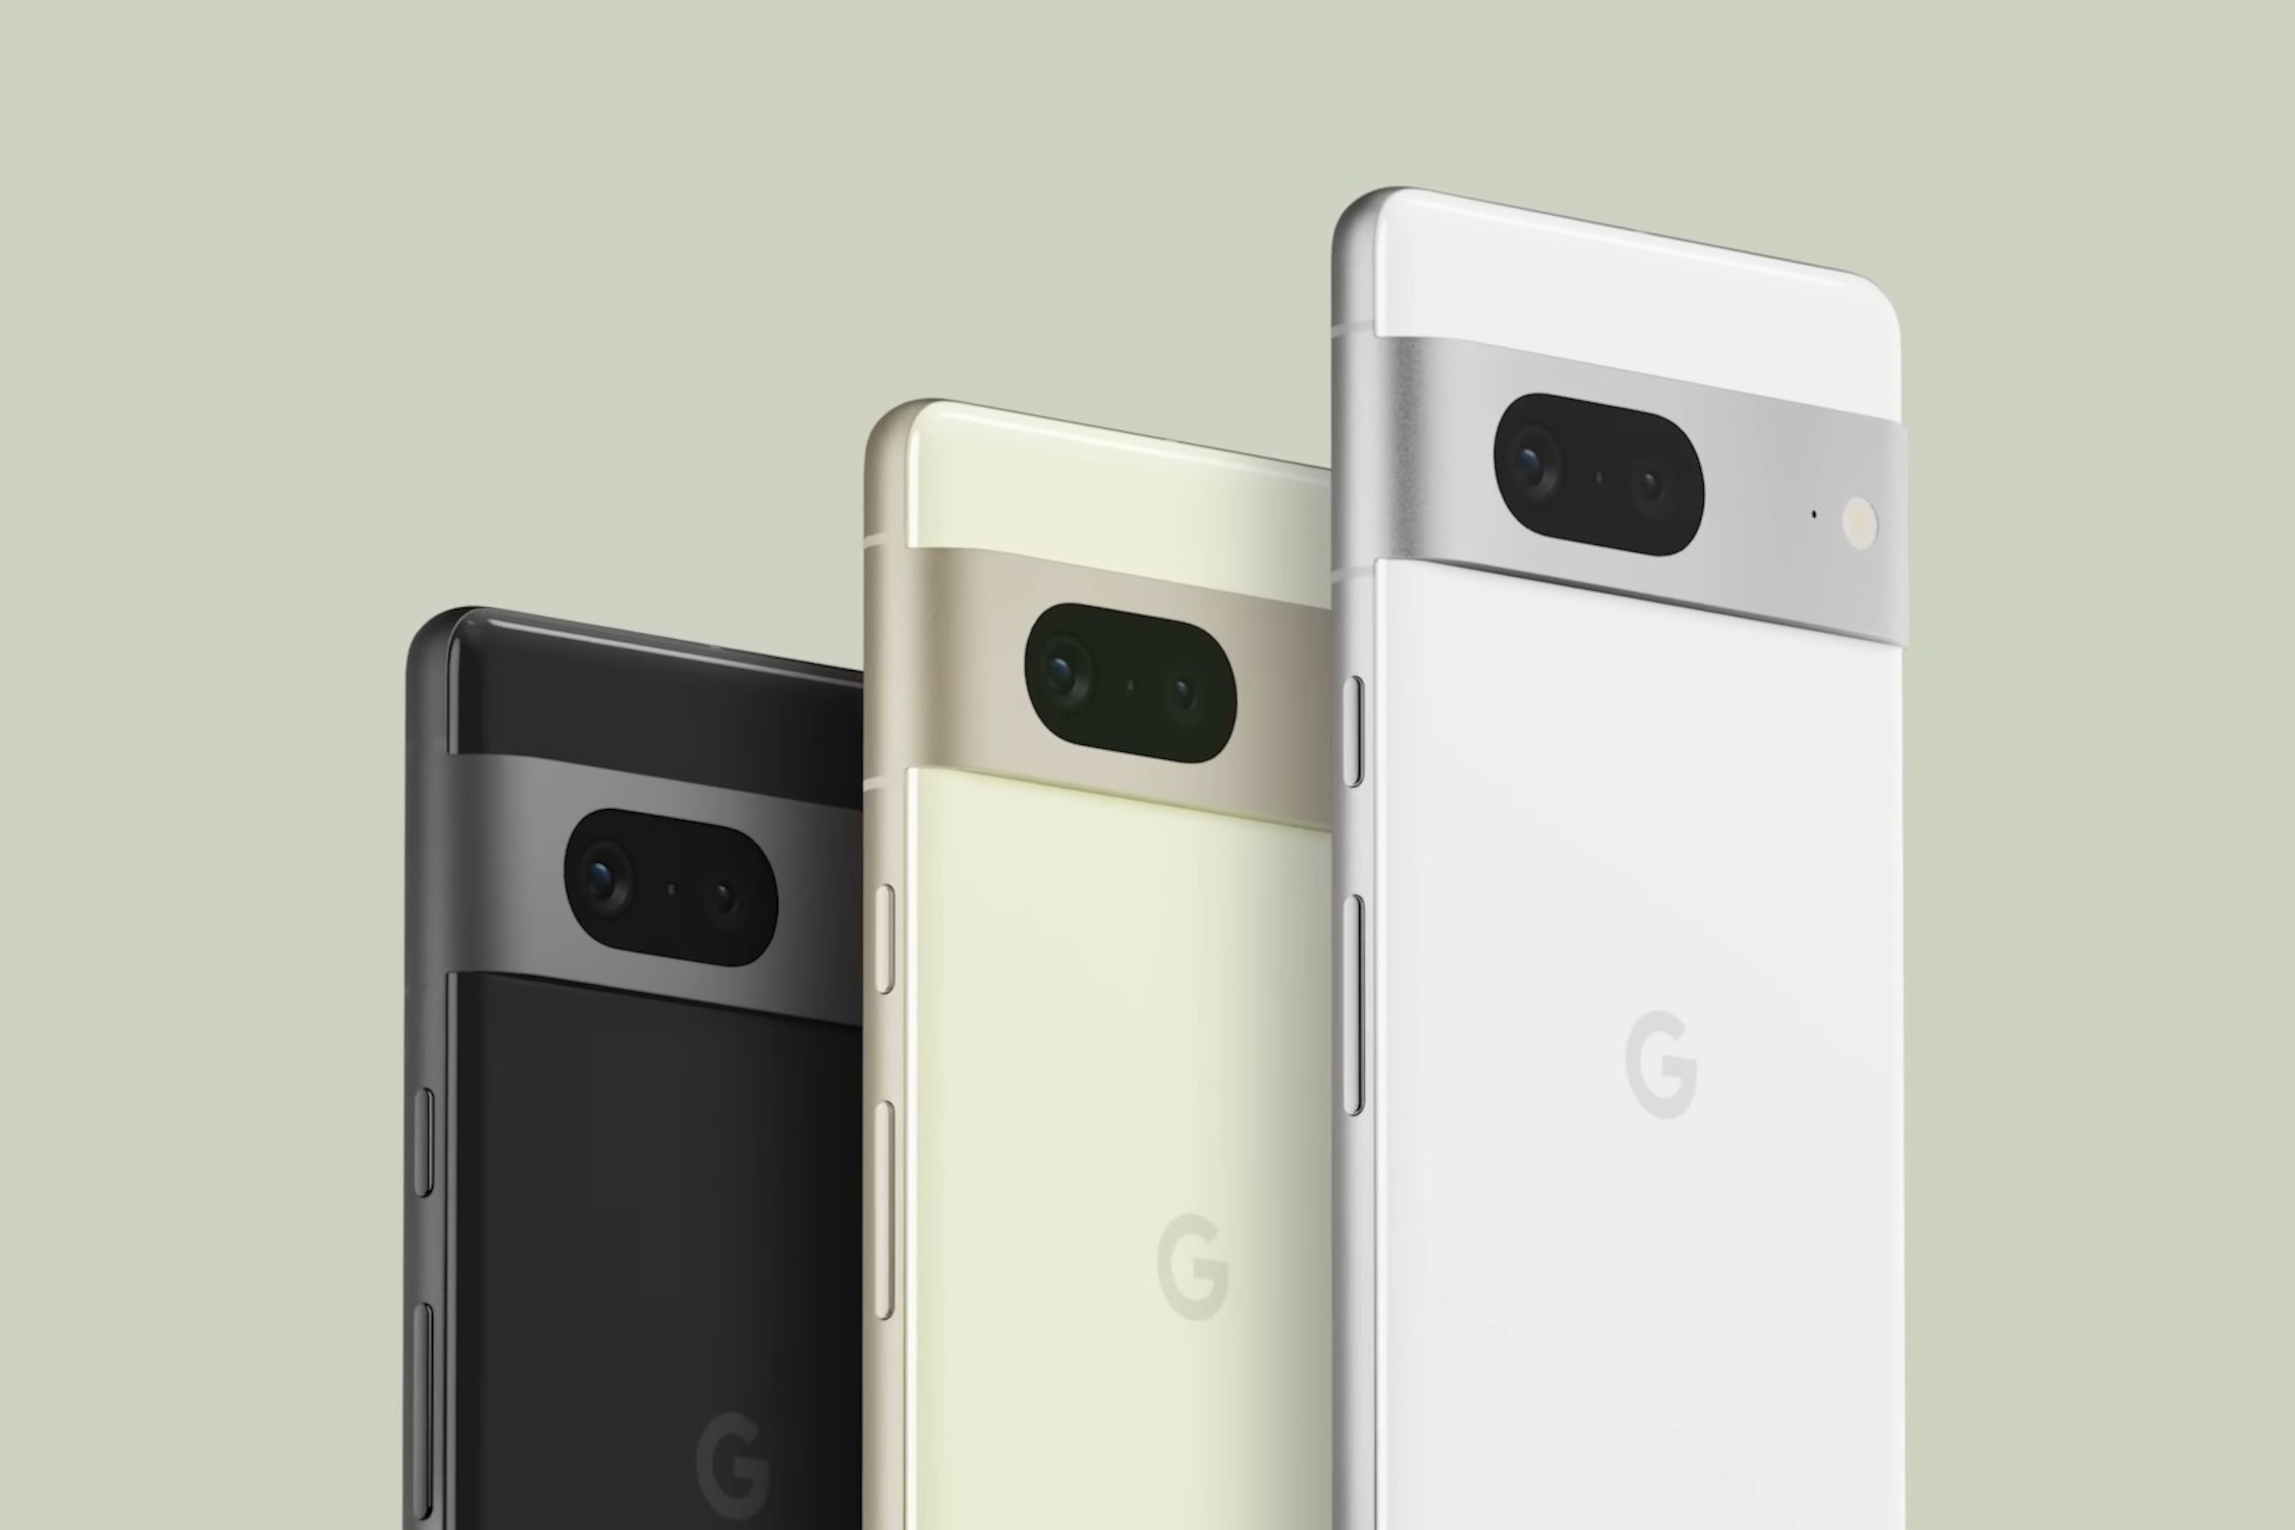 رنگ های مختلف گوشی موبایل پیکسل 7 پرو گوگل / Google Pixel 7 Pro